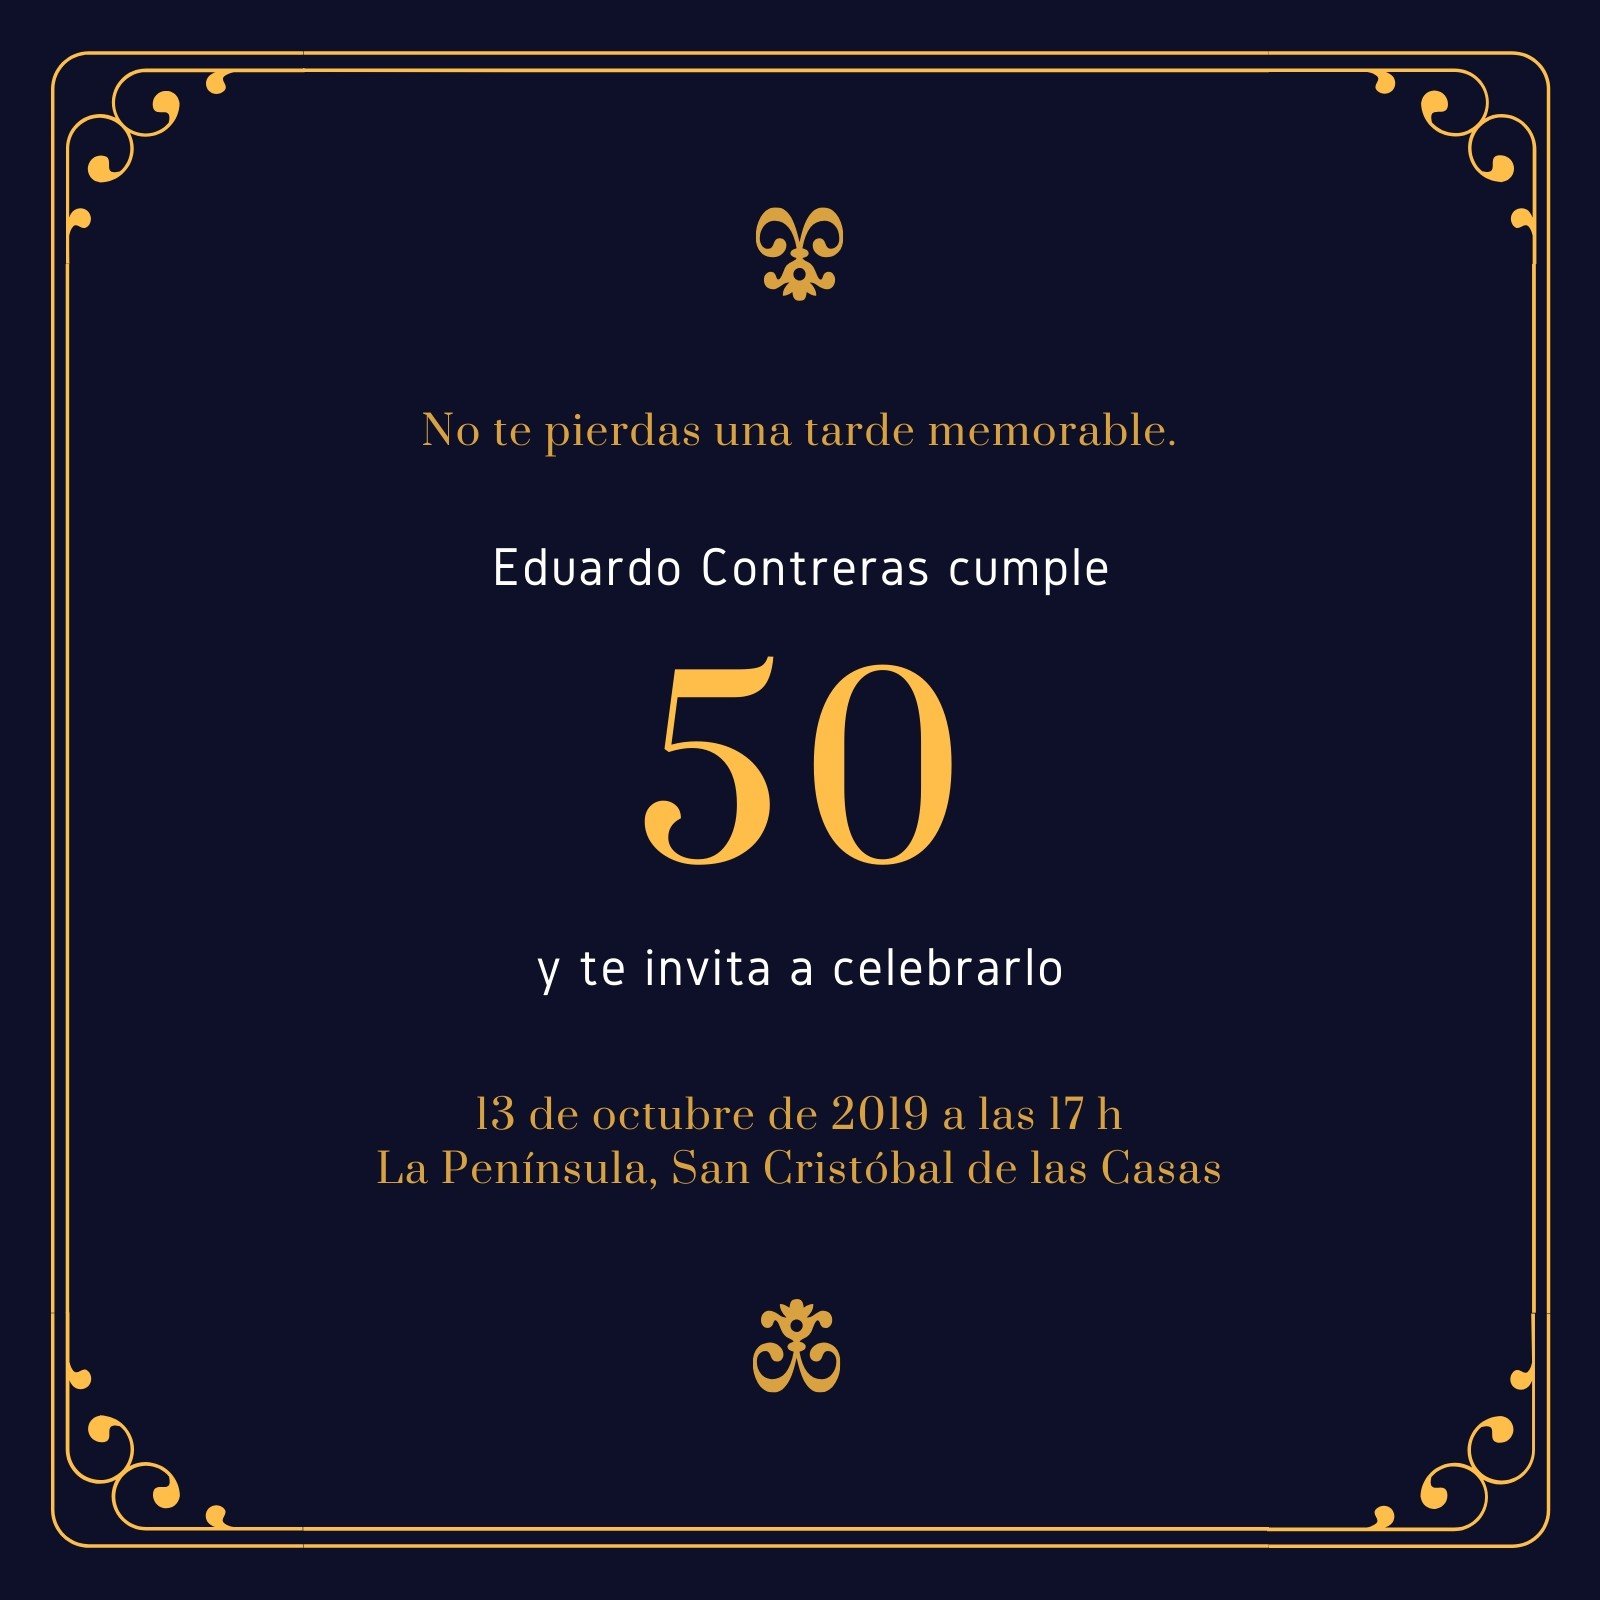 50 años hombre #julidiseños #digital #videoinvitacion #cumpleañosfeliz